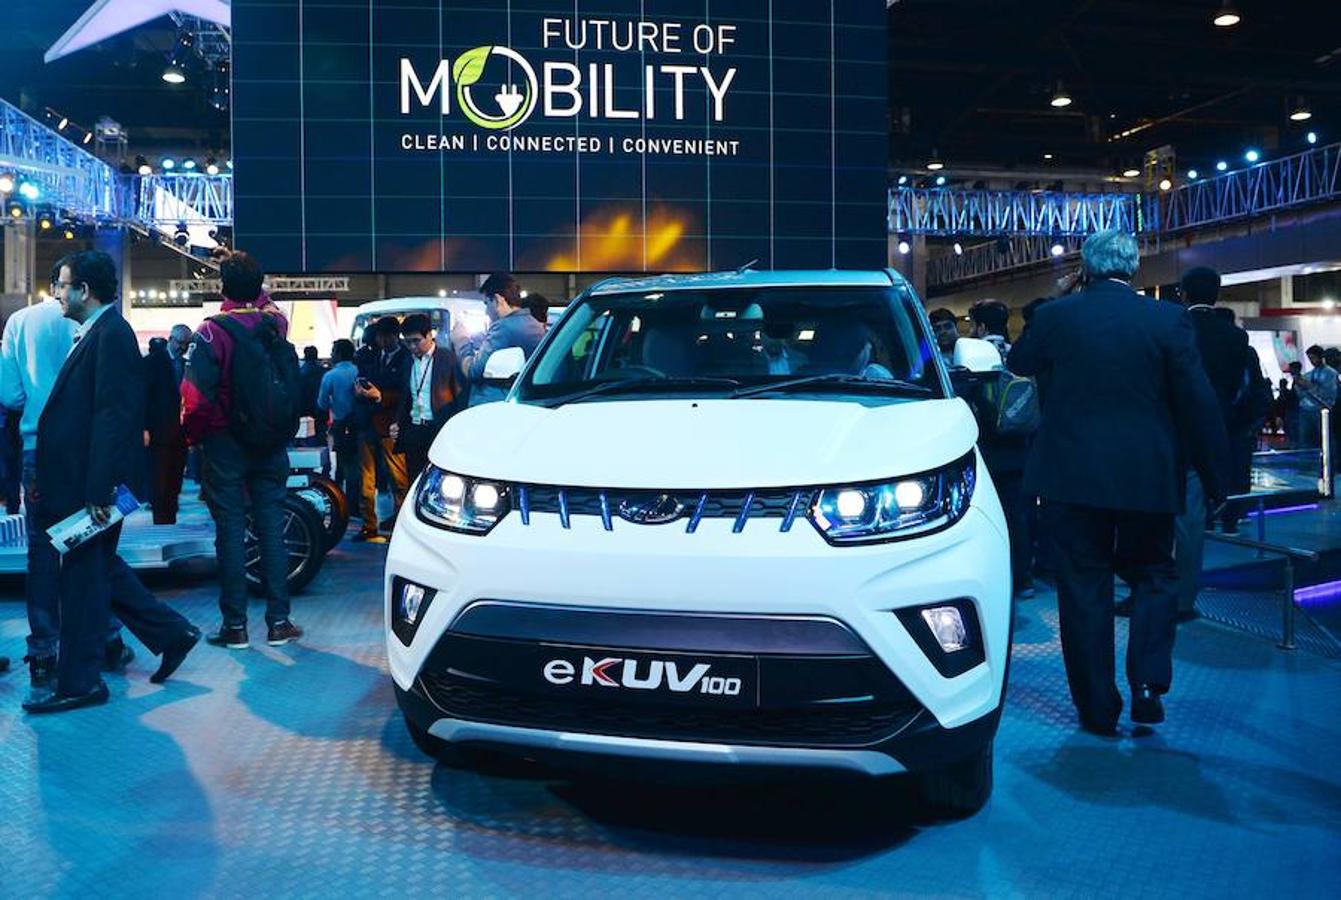 La India ha sido el país elegido para que diferentes marcas de vehículos hayan presentado sus nuevos coches eléctricos.